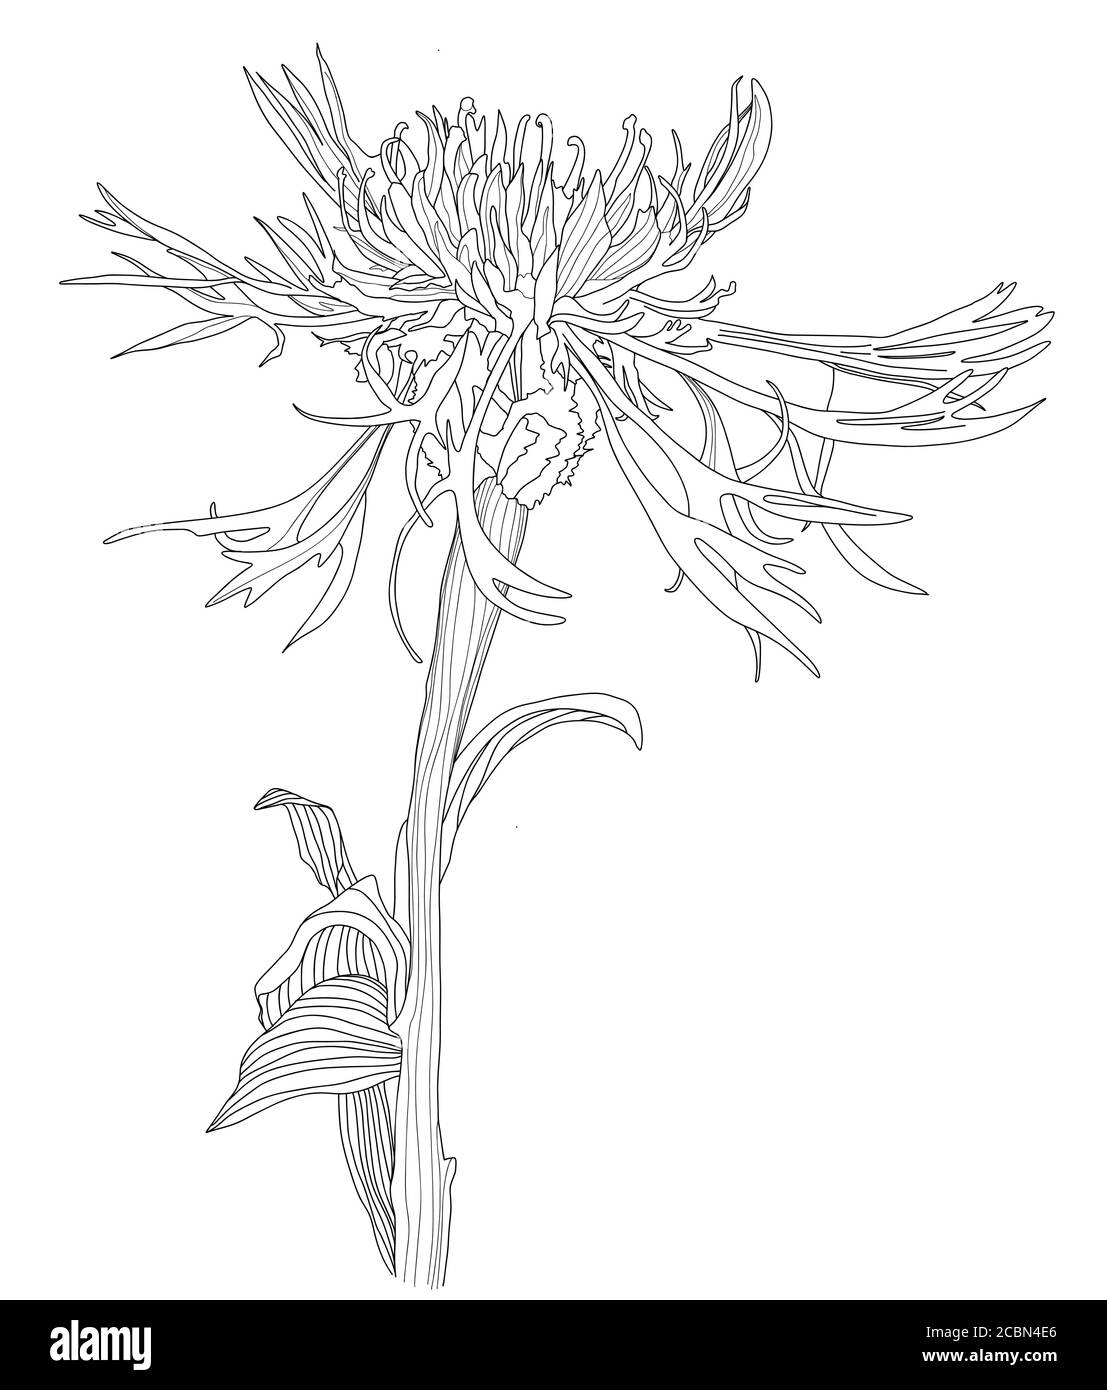 Un fiore Cornflower Sketch Botanica floreale silhouette bianche e nere disegno a mano. Illustrazione vettoriale stile linea Illustrazione Vettoriale